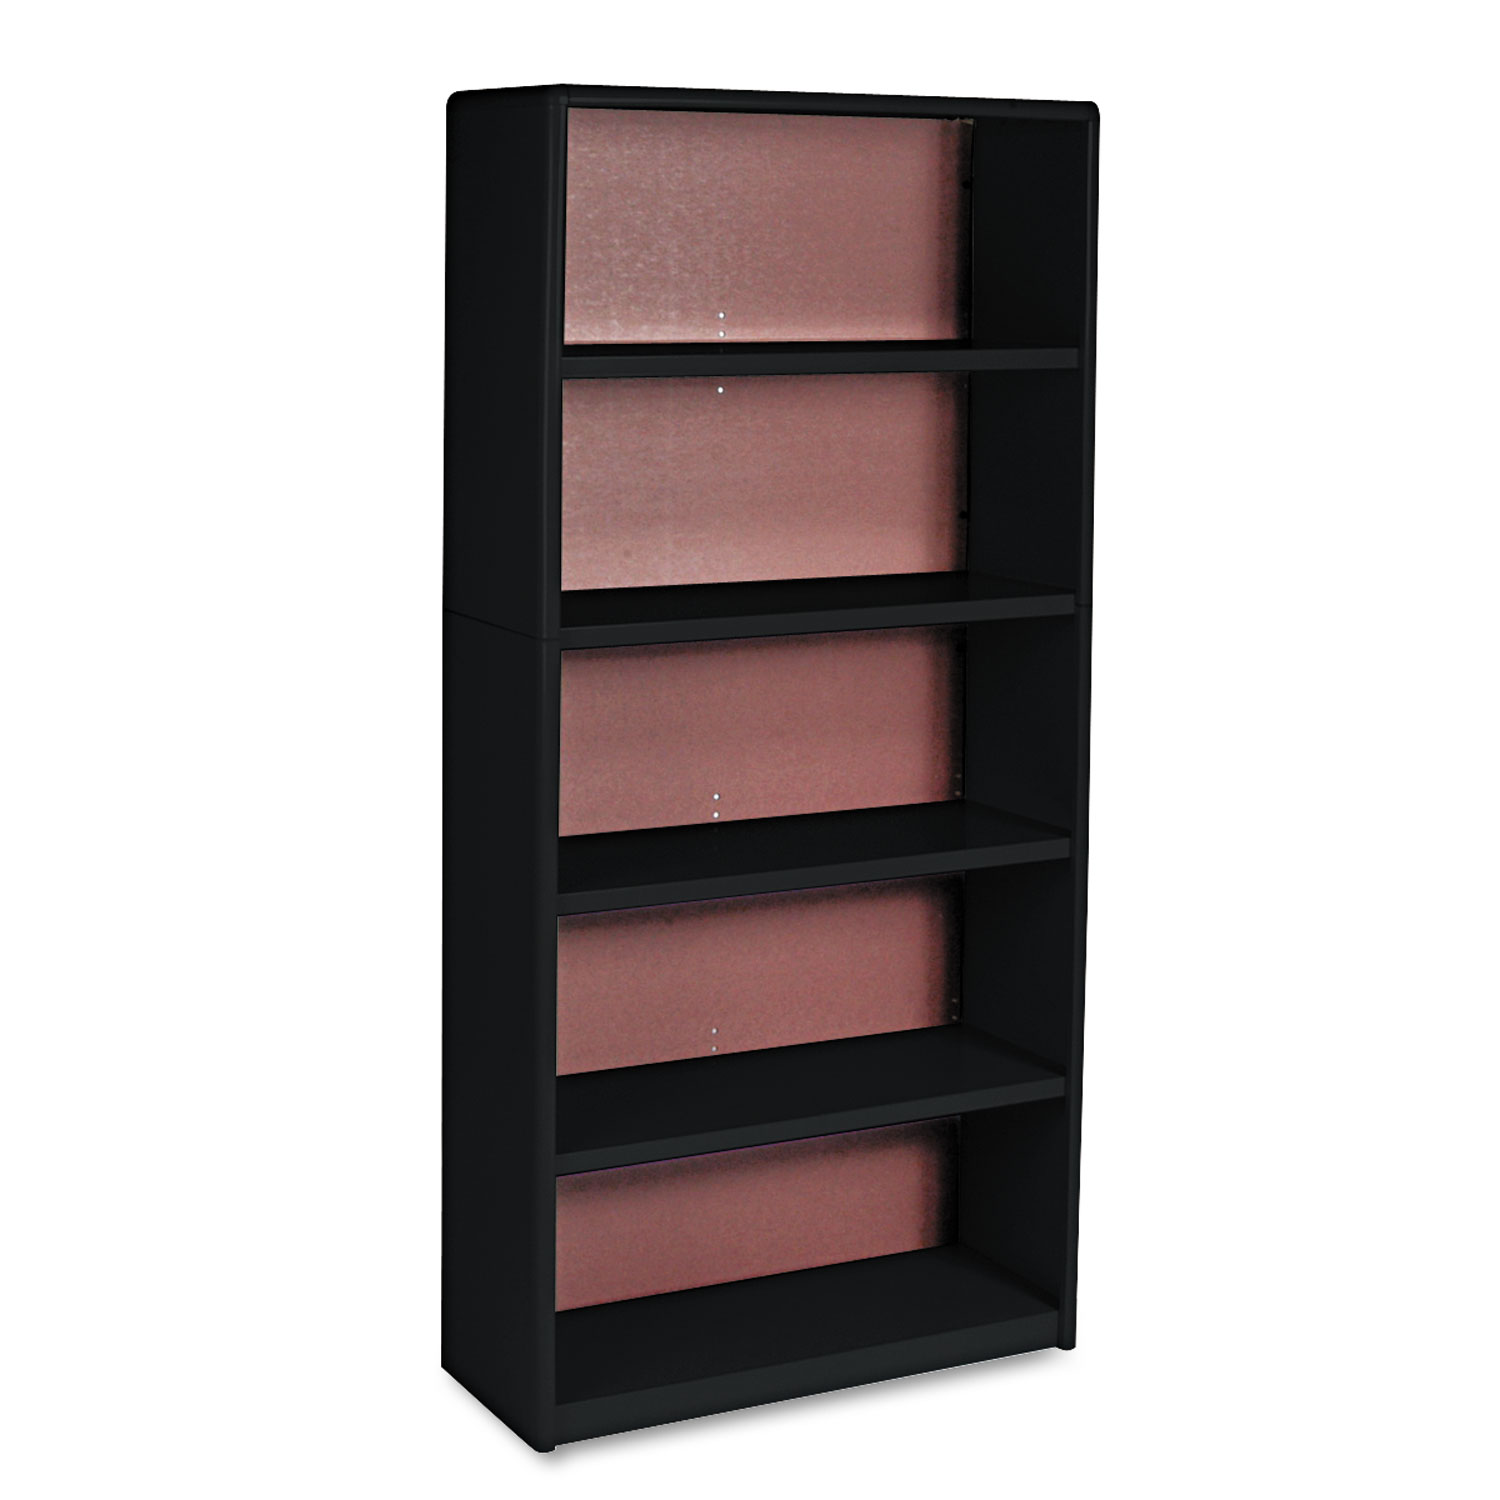  Safco 7173BL Value Mate Series Metal Bookcase, Five-Shelf, 31-3/4w x 13-1/2d x 67h, Black (SAF7173BL) 